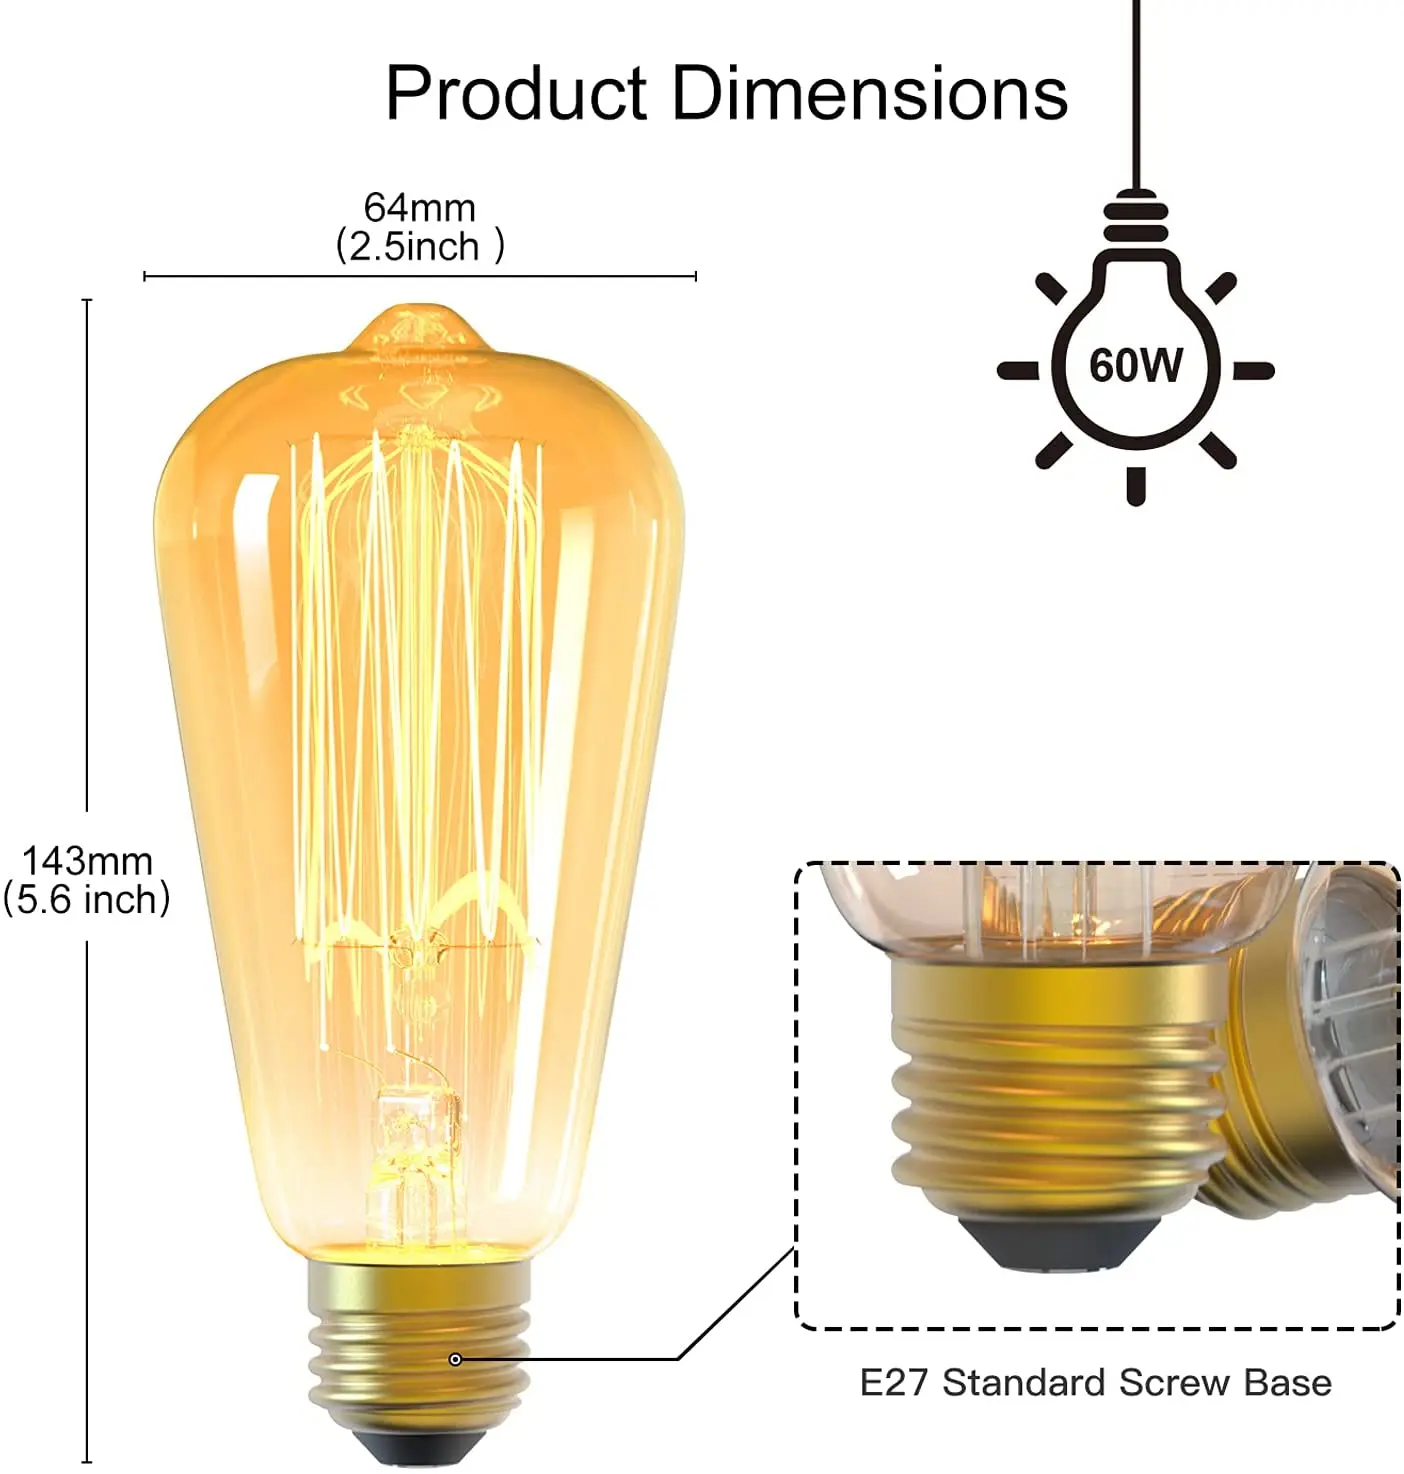 Filament LED Light Bulb ST64 - 2W, 180 lm, E27, 2200K - 4 pcs